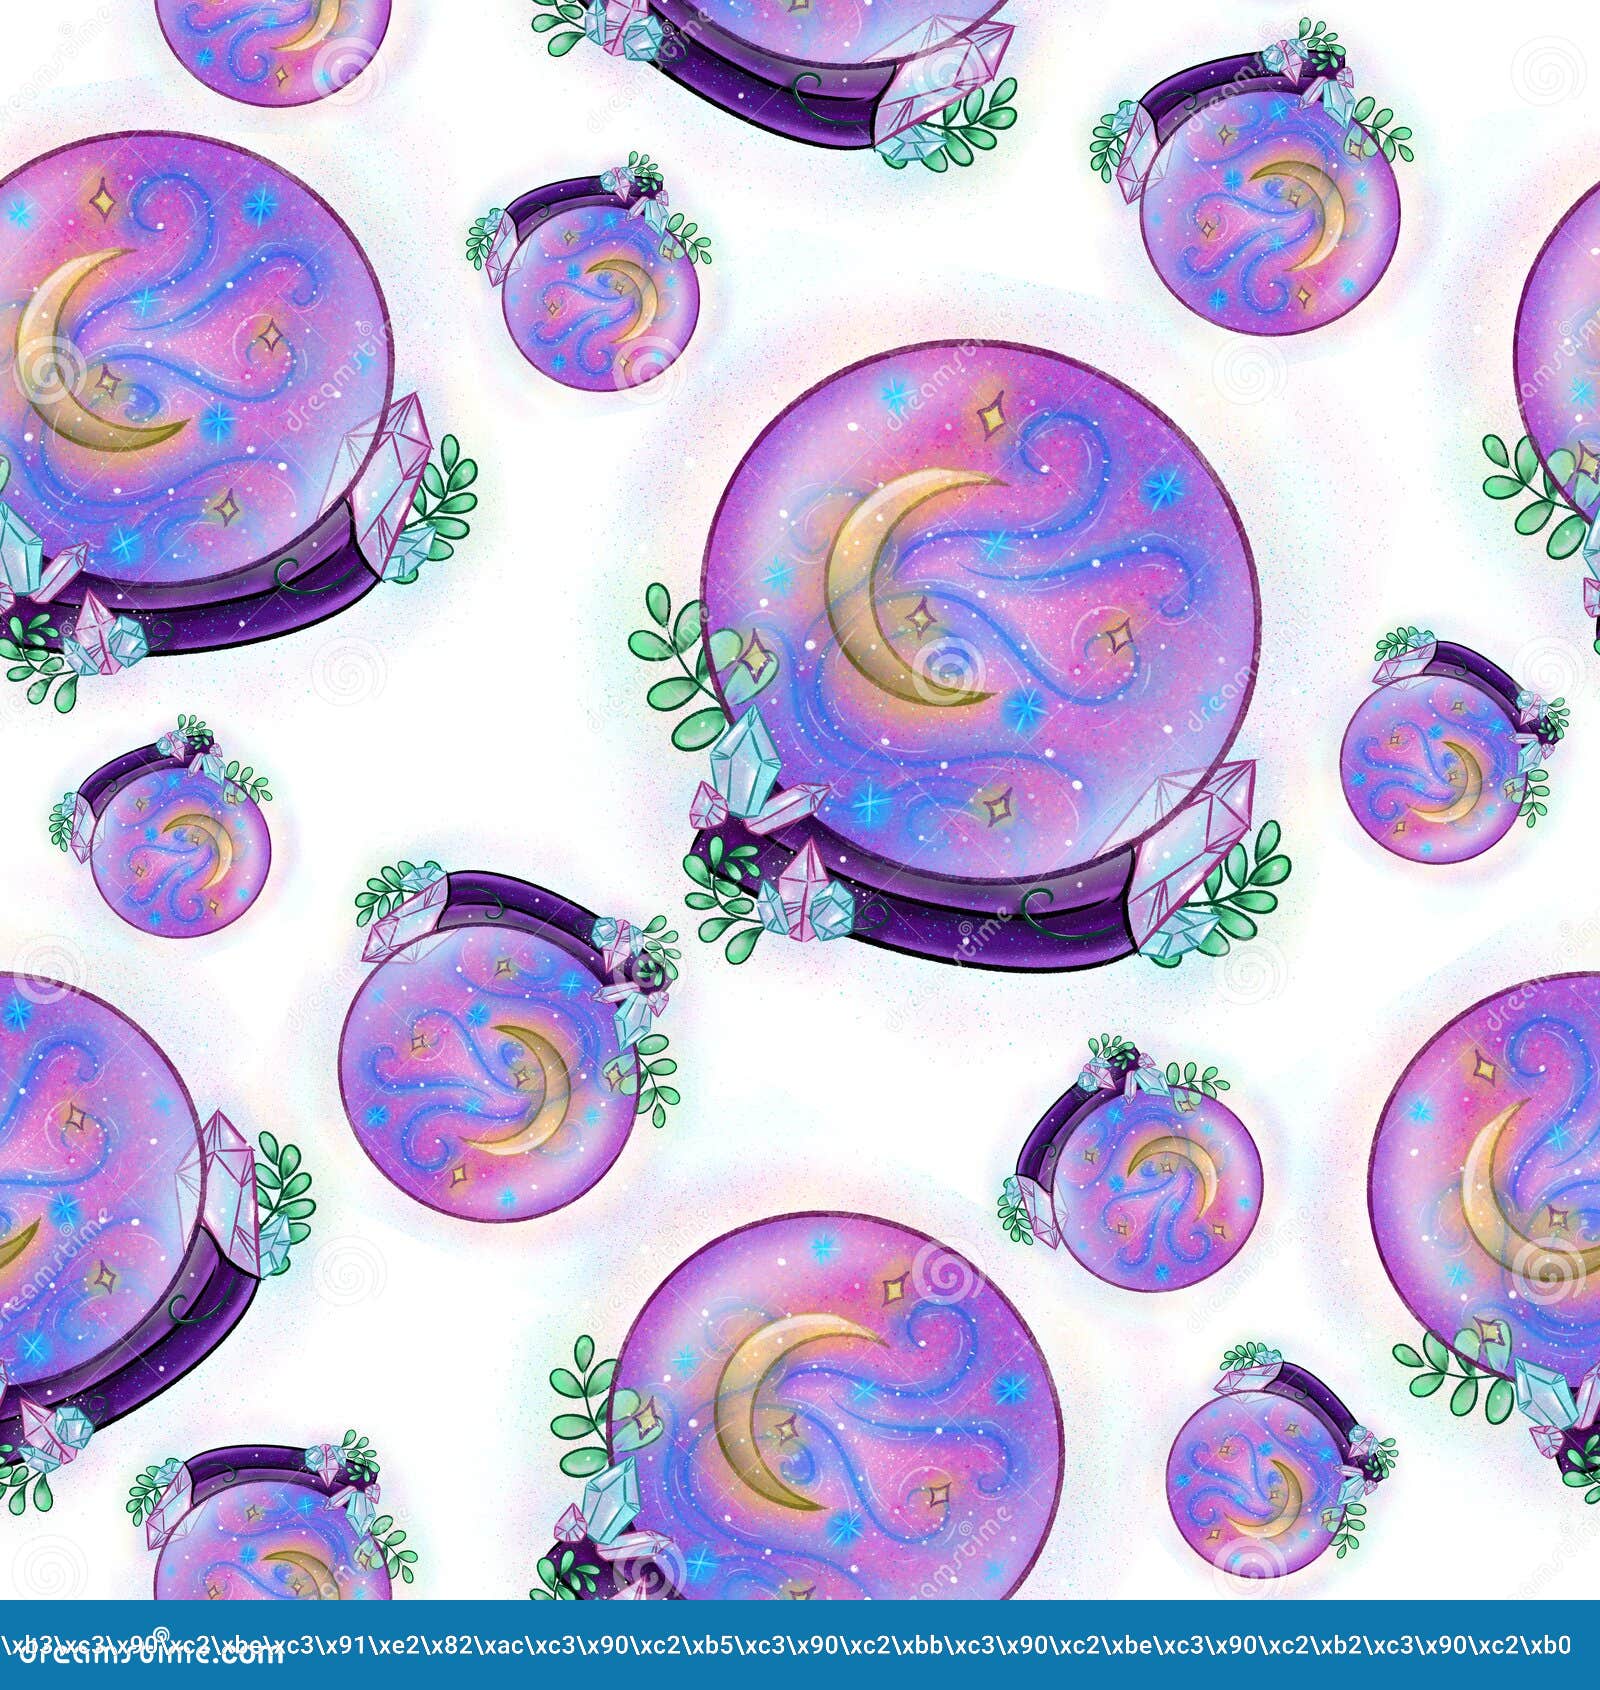 Bolas de cristal mágicas esferas de energia de fantasia com efeito